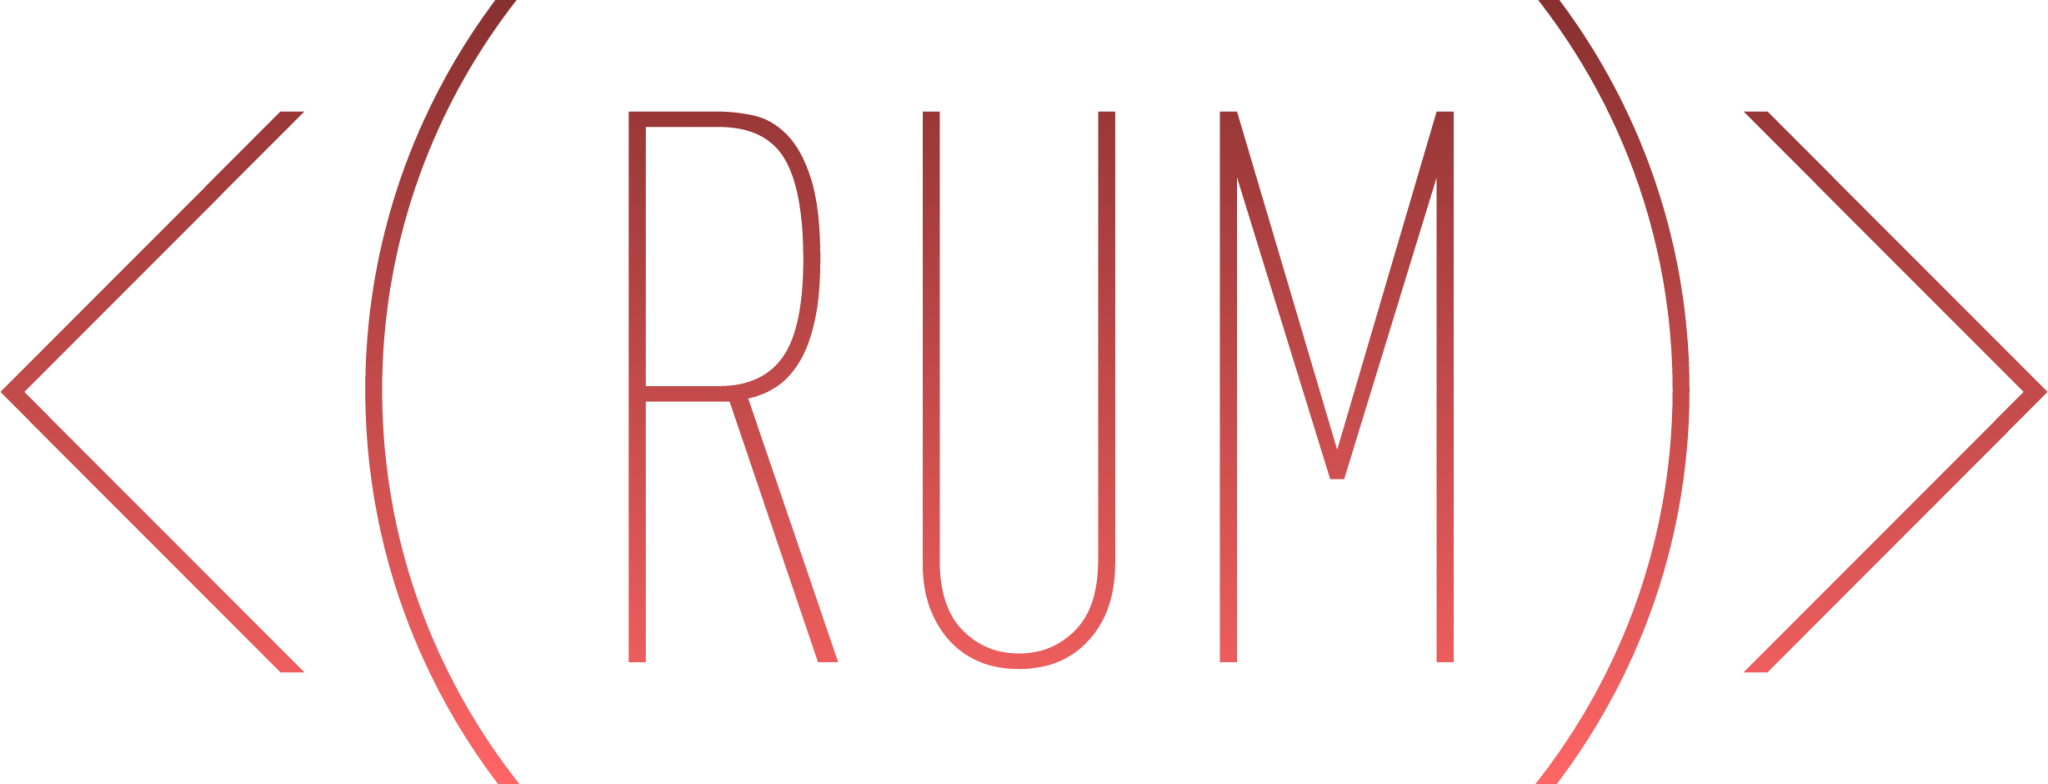 rum icon